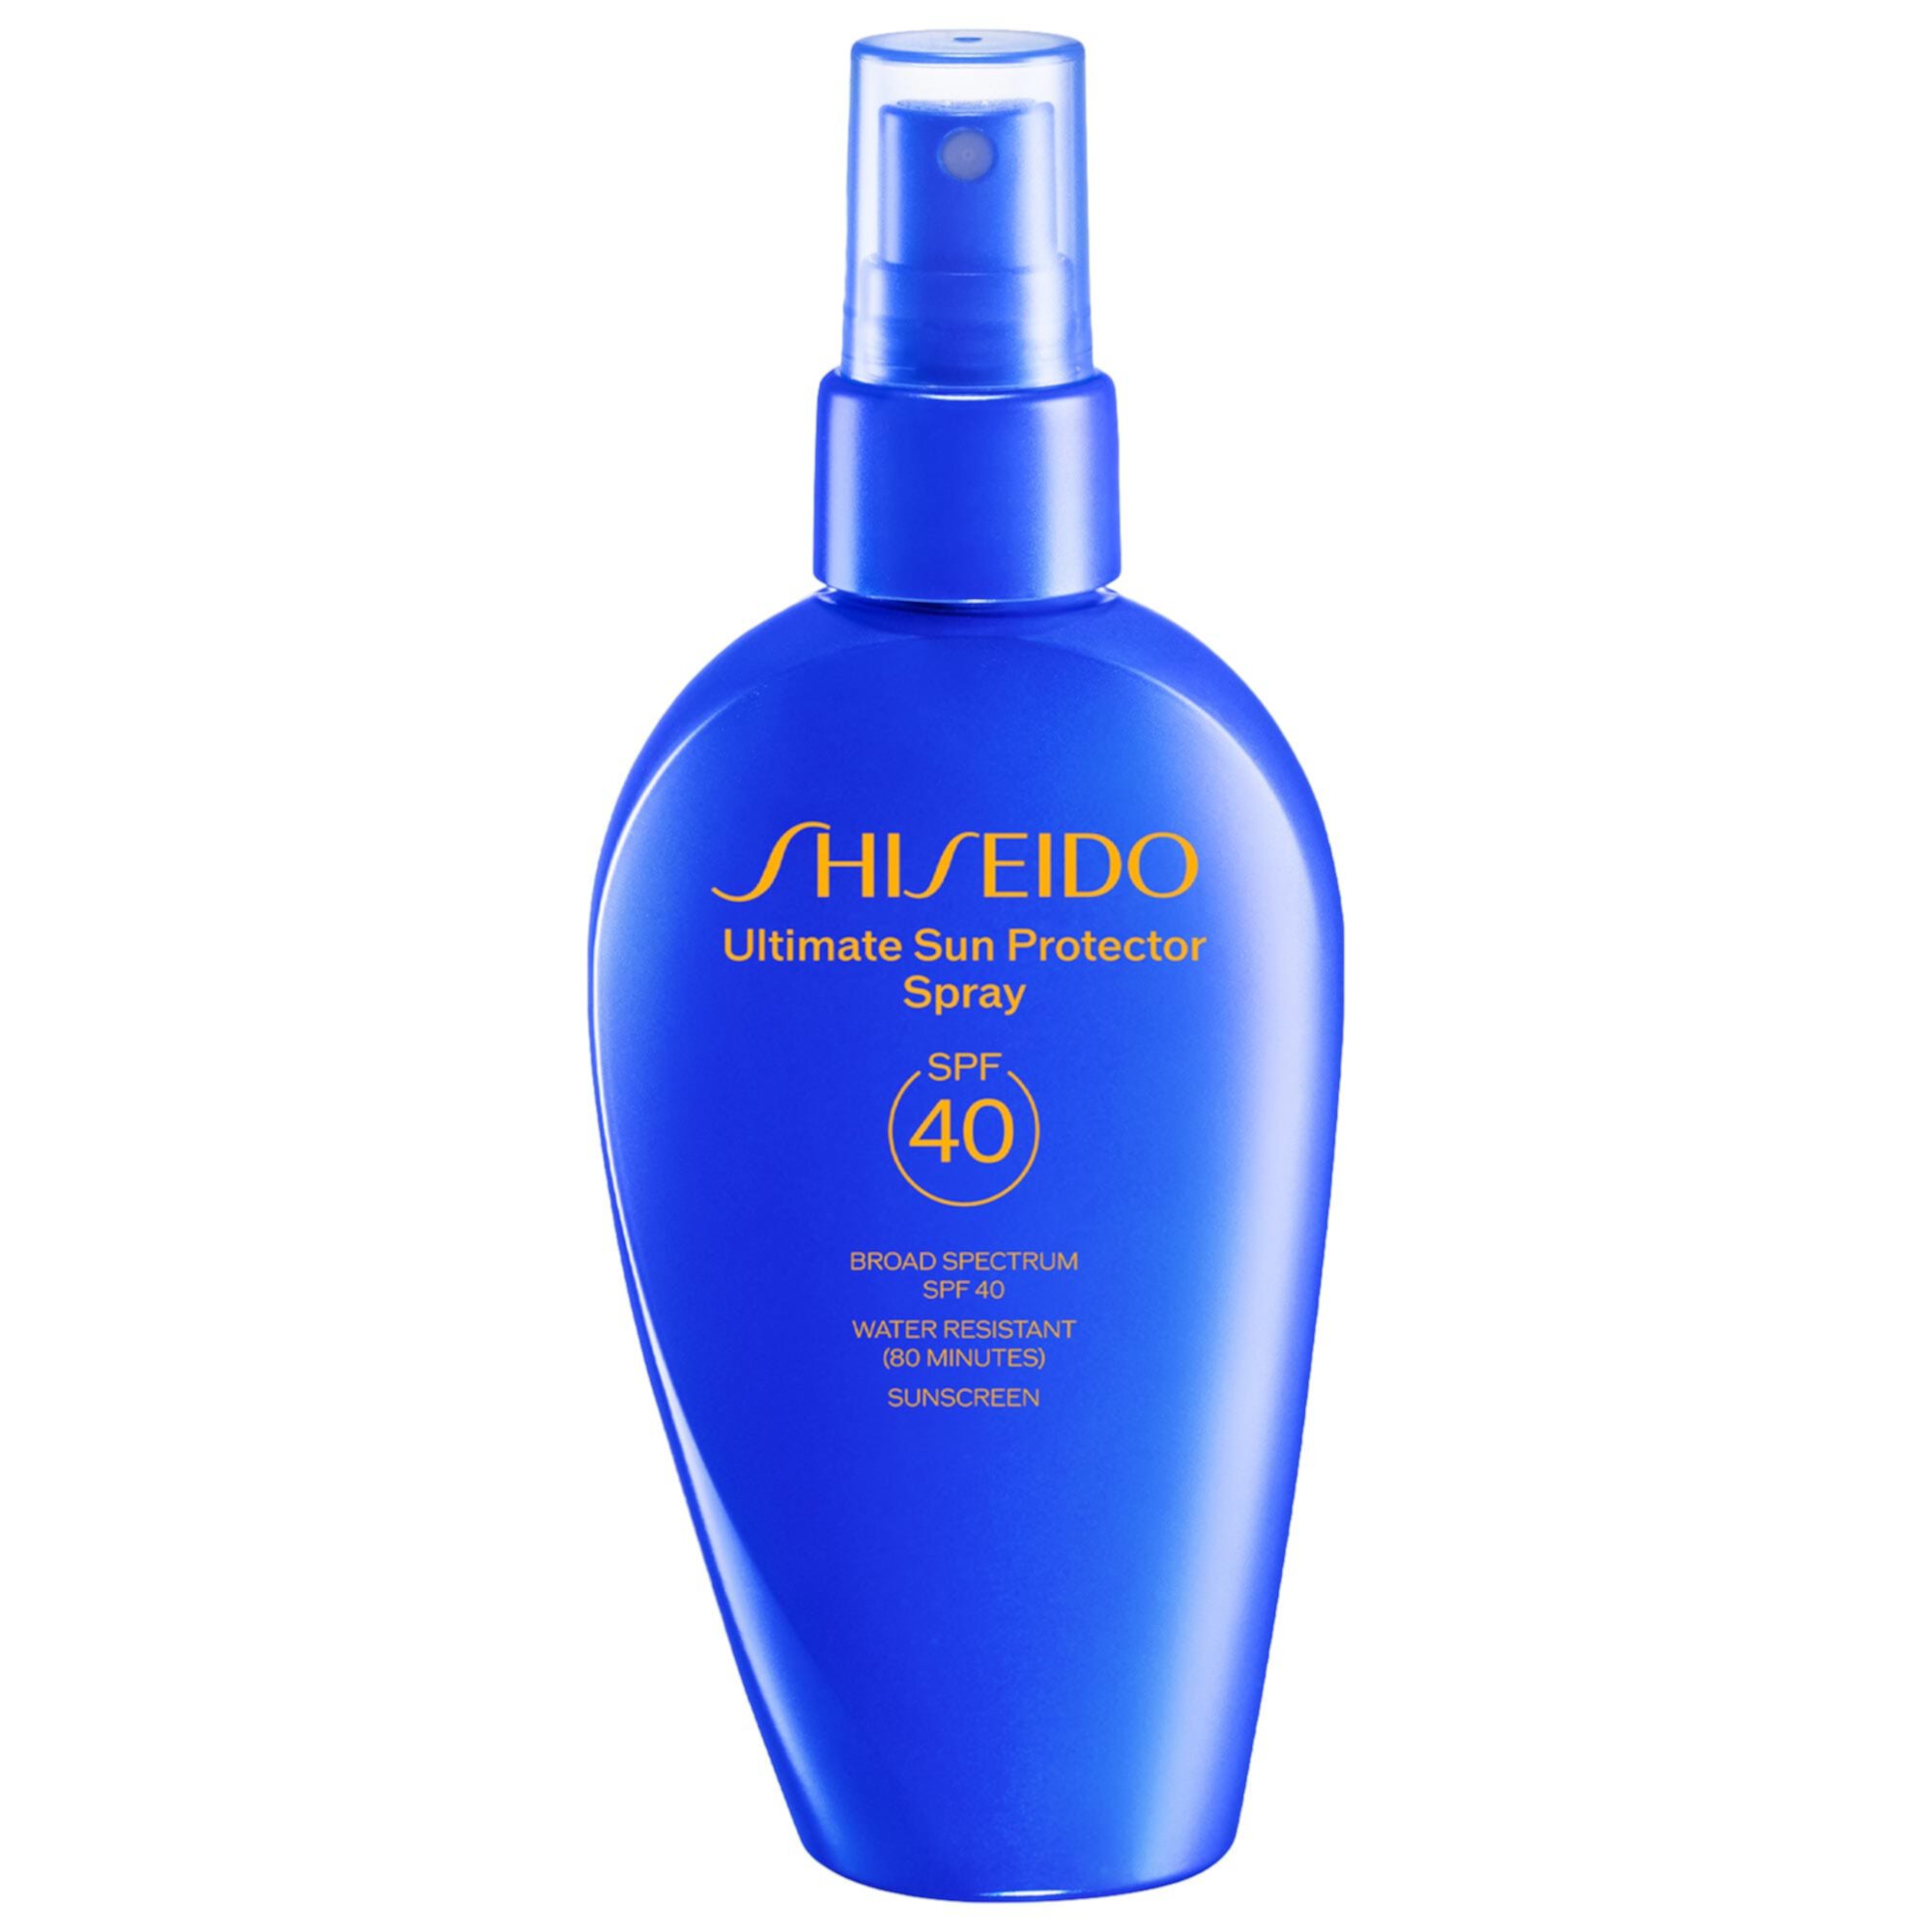 Ultimate Sun Protector  Face and BodySpray SPF 40 Sunscreen Shiseido